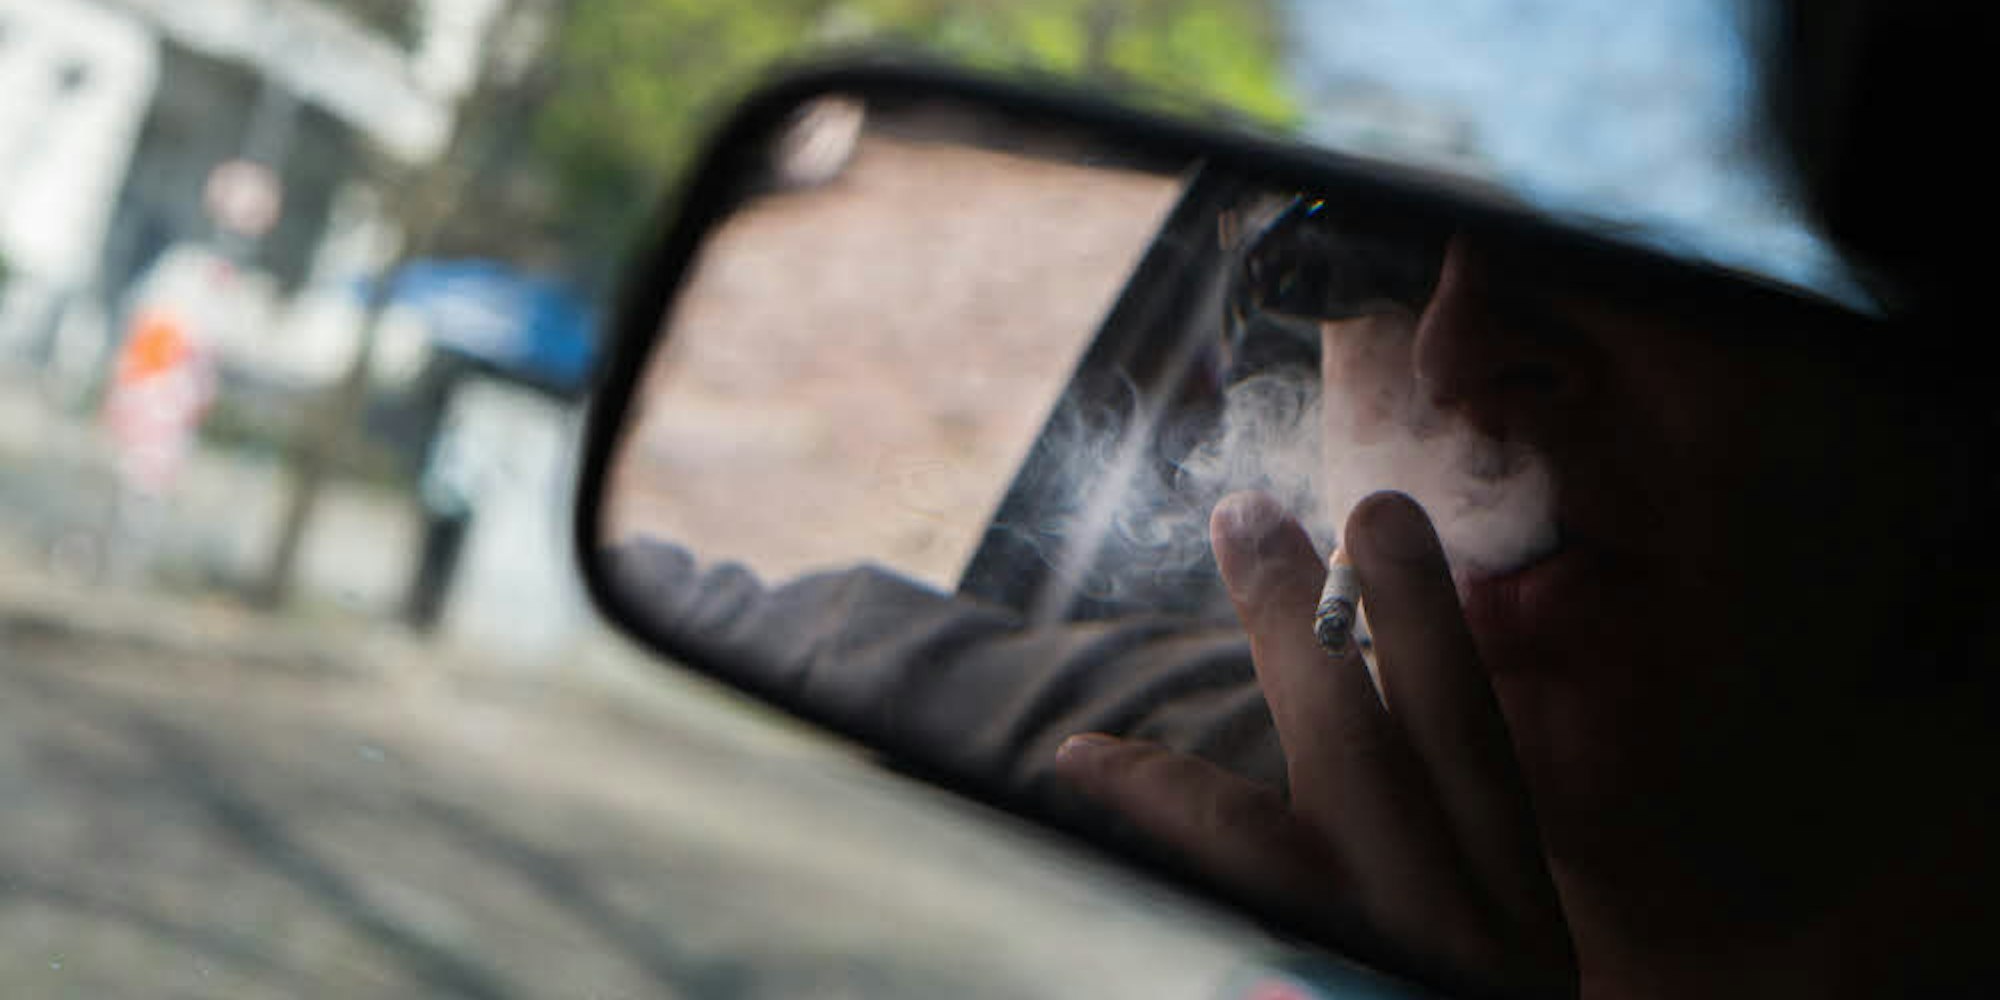 Ungesund und zuweilen brandgefährlich: Rauchen hinter dem Autosteuer sorgt für Ablenkung und kann zu schlimmen Unfällen führen.